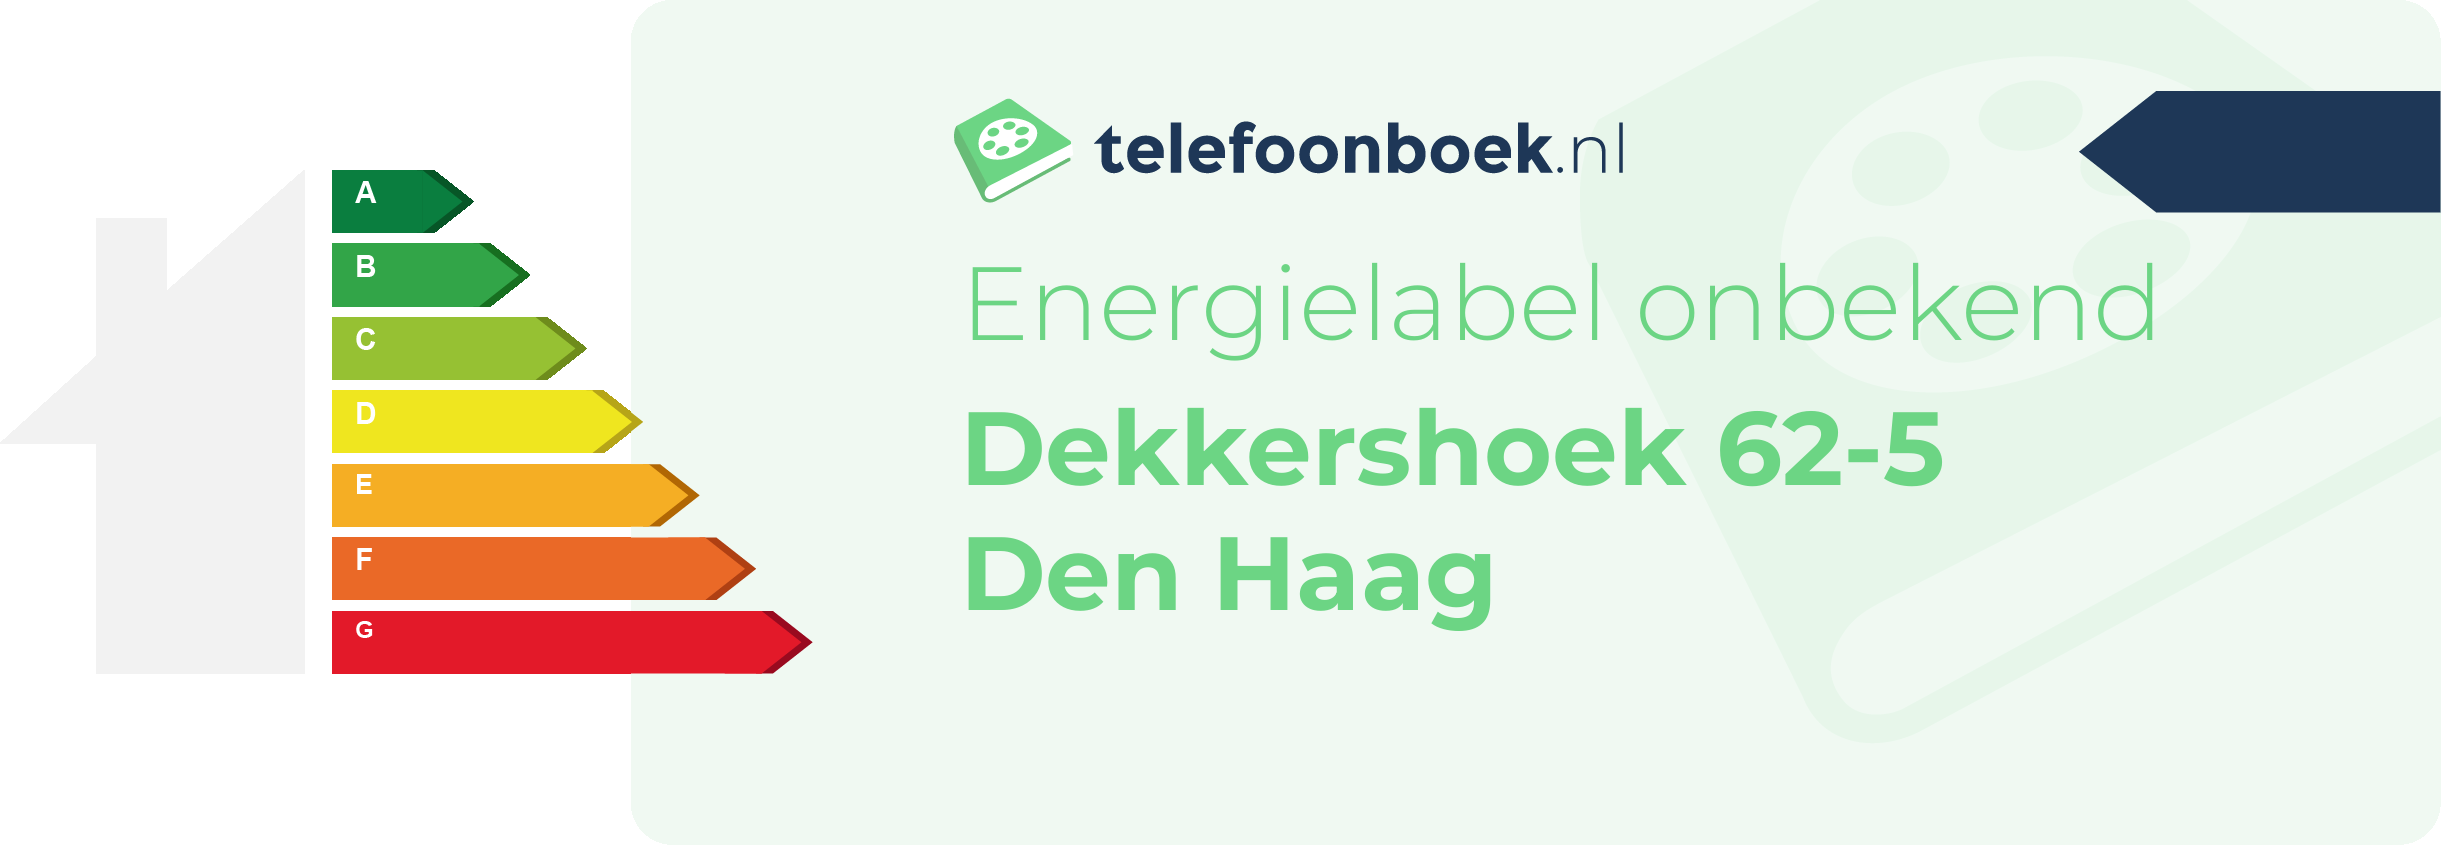 Energielabel Dekkershoek 62-5 Den Haag